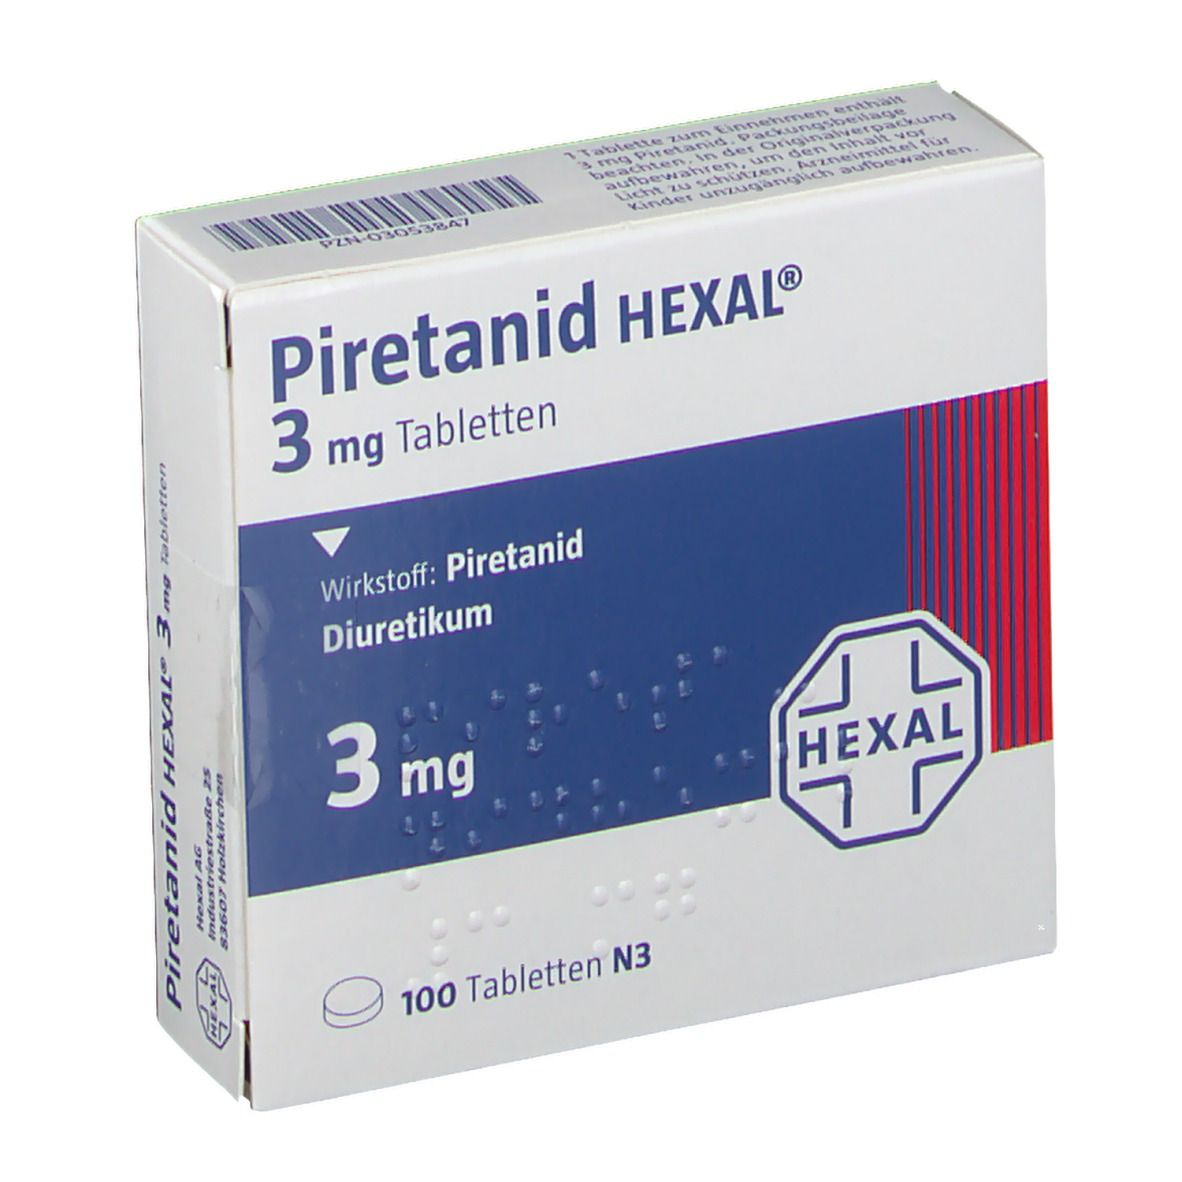 Piretanid HEXAL® 3 mg